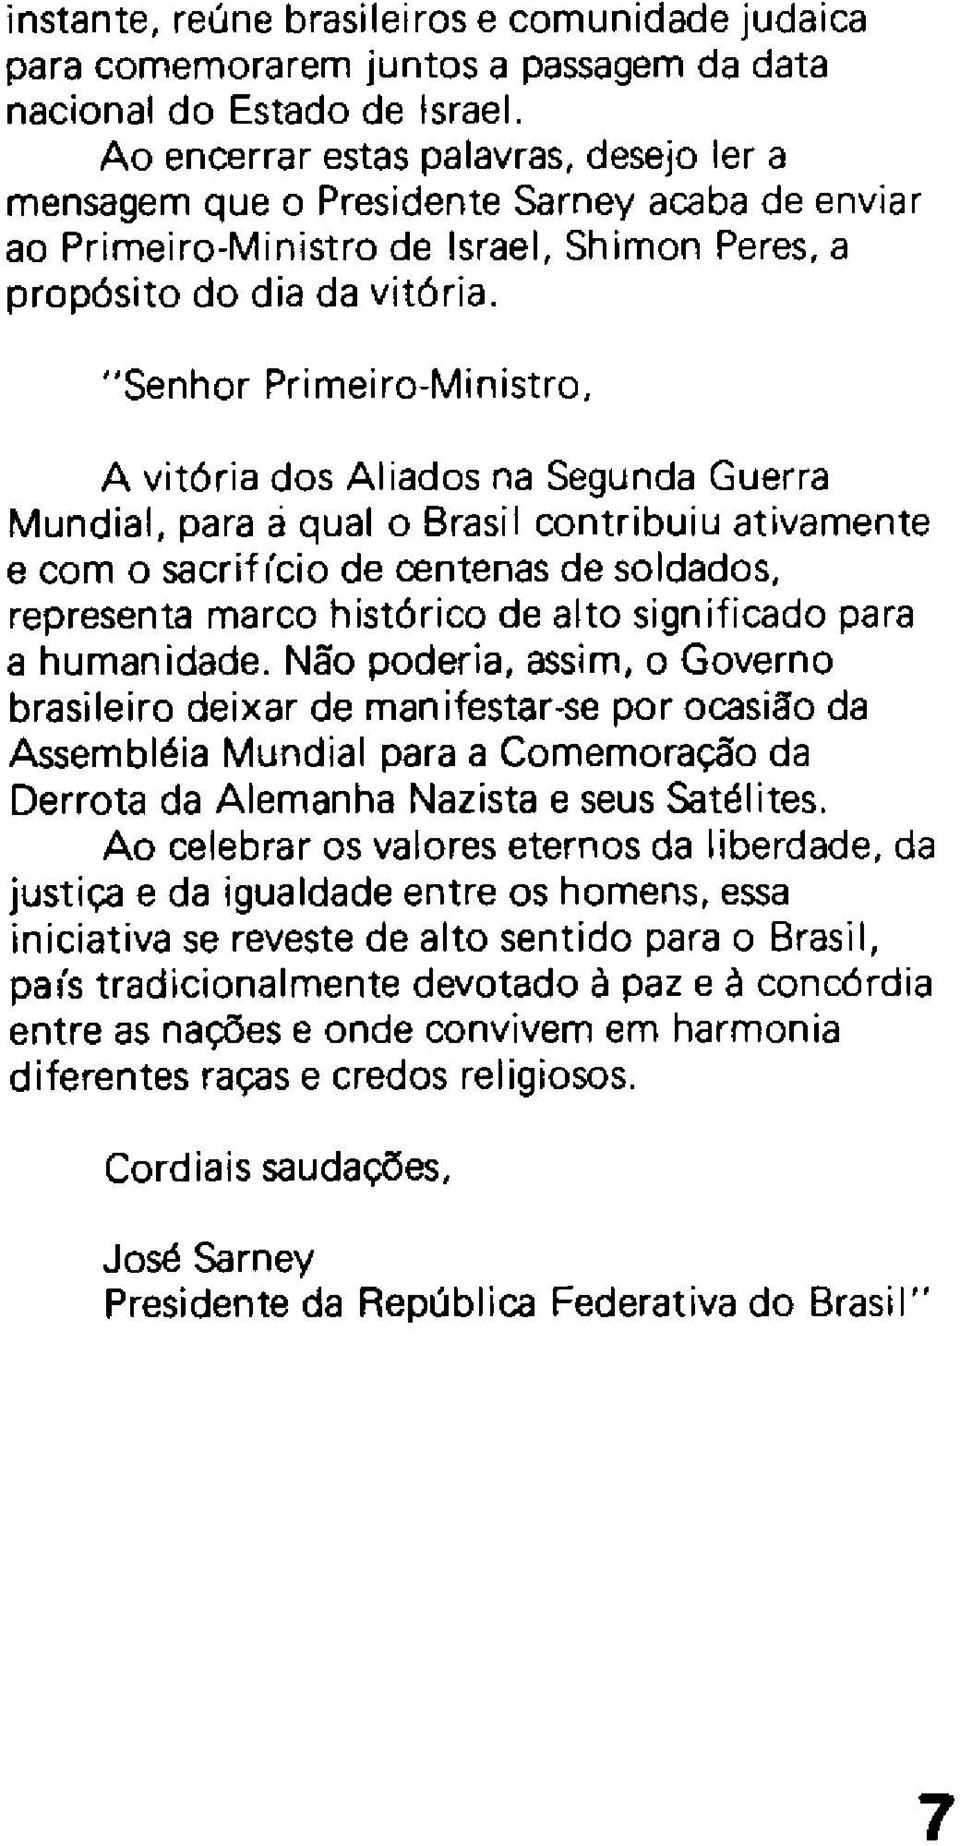 "Senhor Primeiro-Ministro, A vitória dos AI iados na Segunda Guerra Mundial, para aqual o Brasil contribuiu ativamente e com o sacrifi'cio de centenas de soldados, representa marco histórico de alto